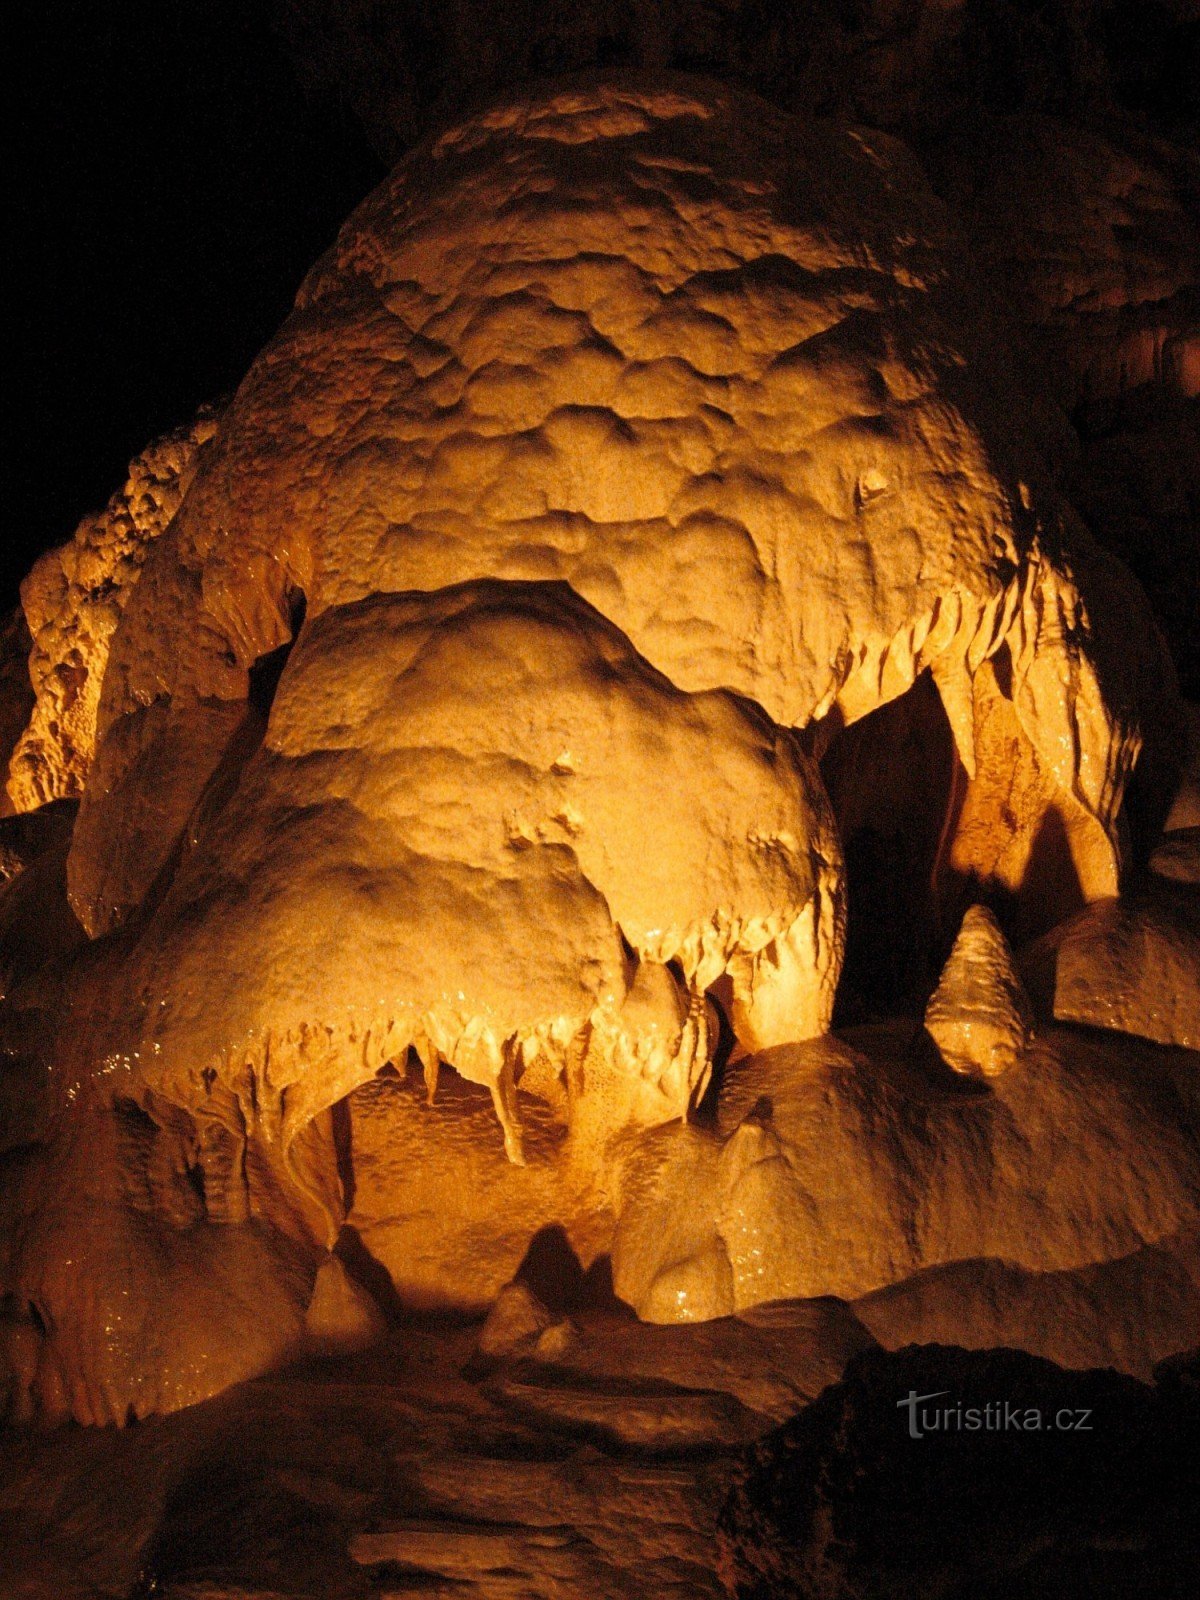 Σπήλαια Javoříč